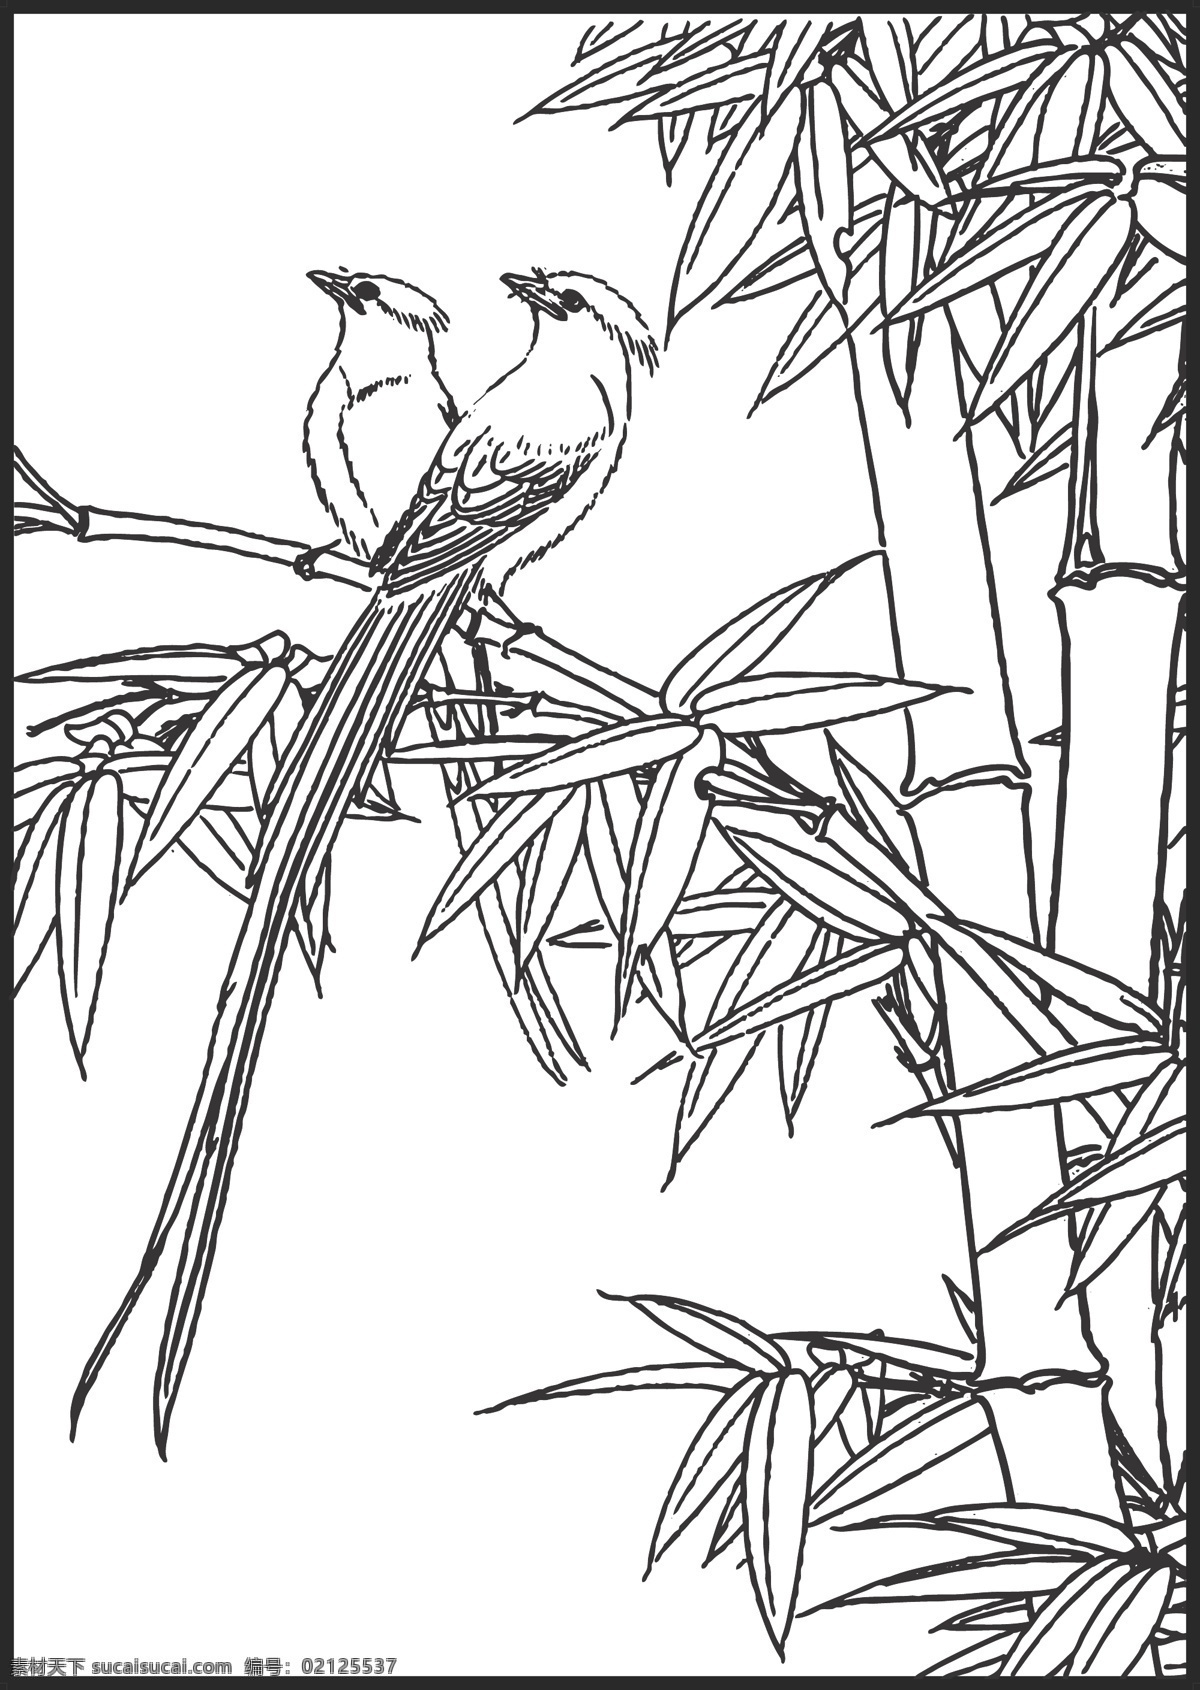 竹雀 竹子 植物 雀 鸟儿 自然景观 绘画 线条 矢量 传统 装饰 插画 白描 花鸟白描图 生物世界 鸟类